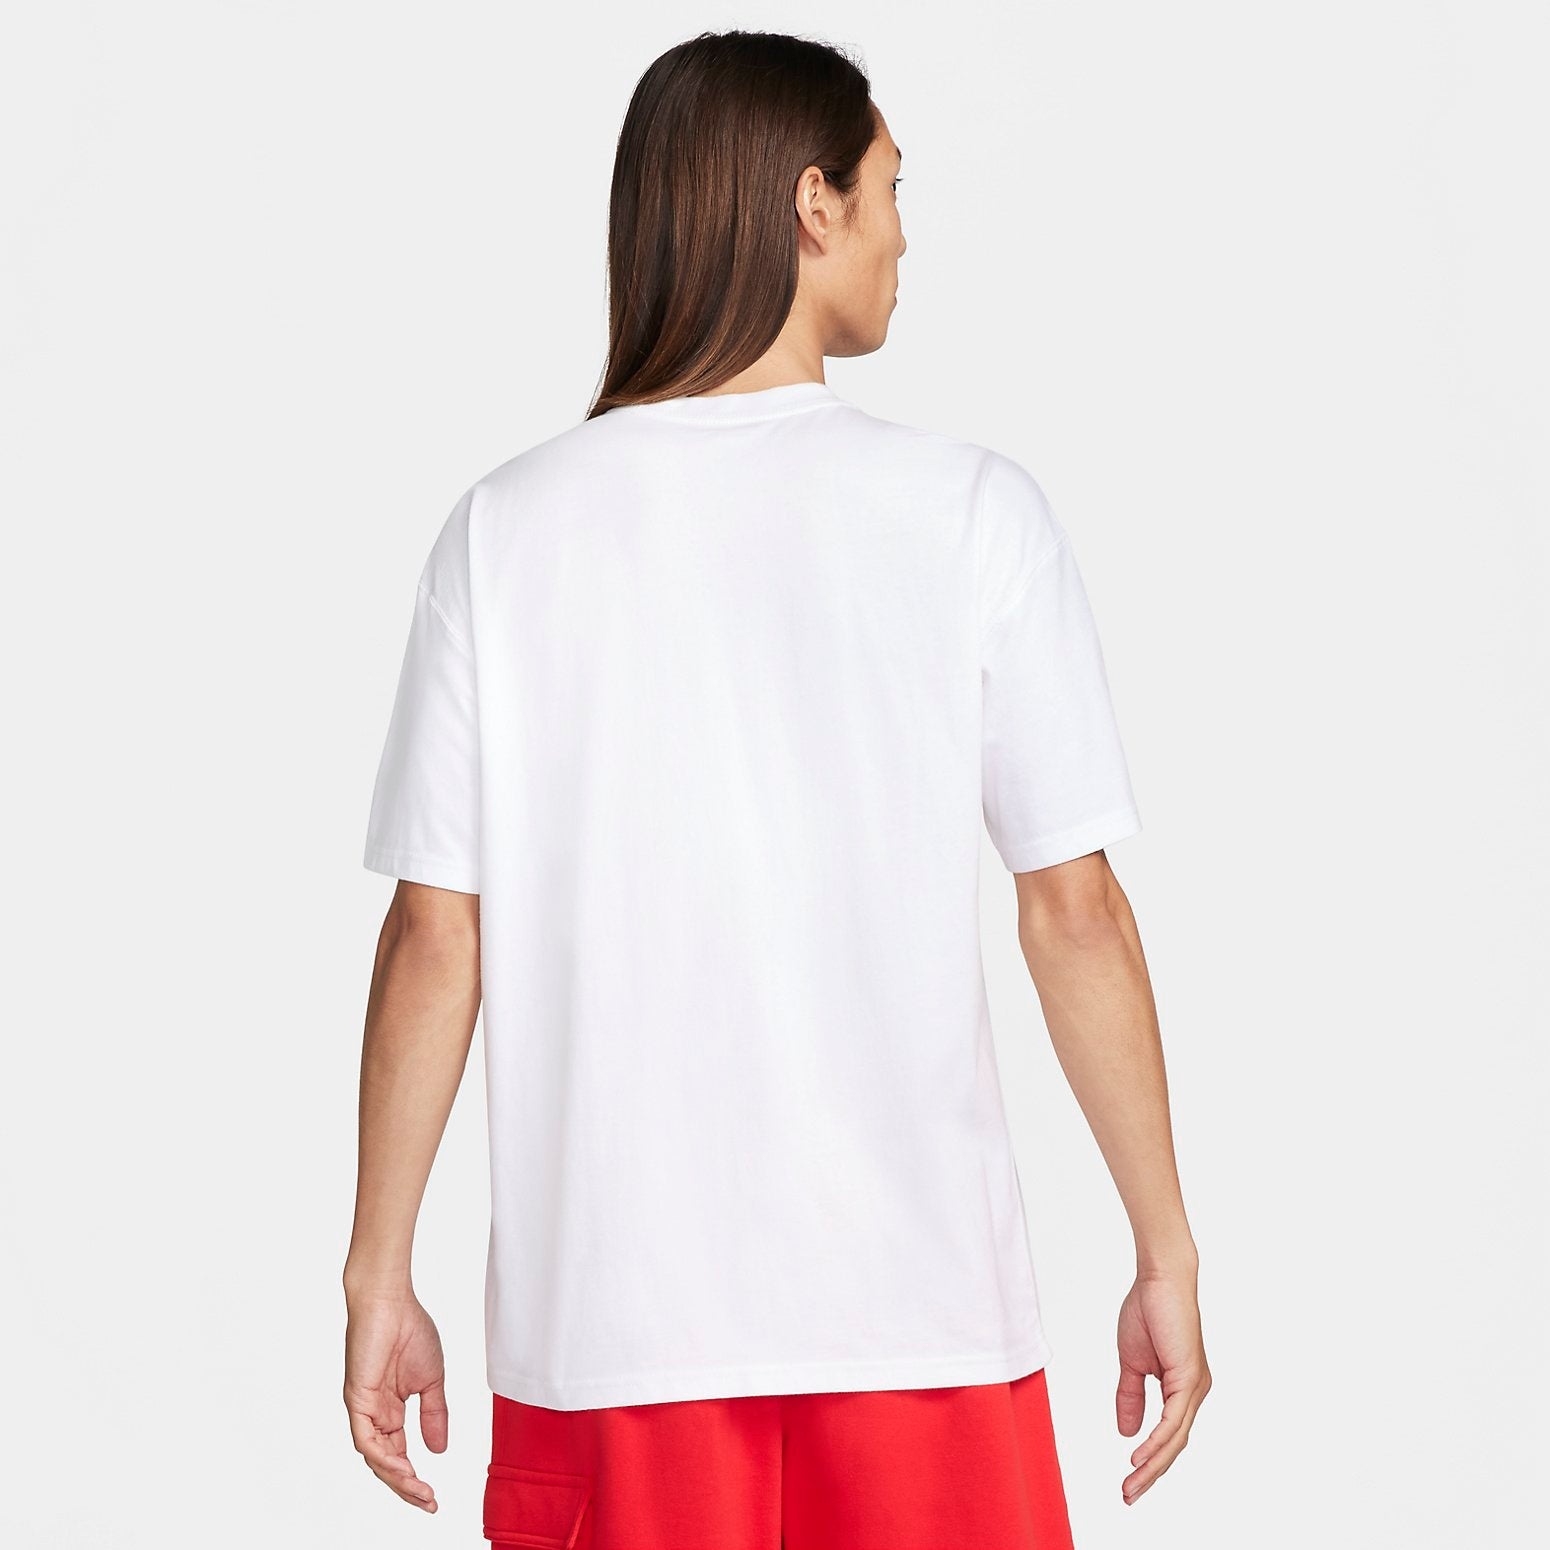 Nike sportswear Air Max T-Shirt 'White' FQ3763-100 - 3